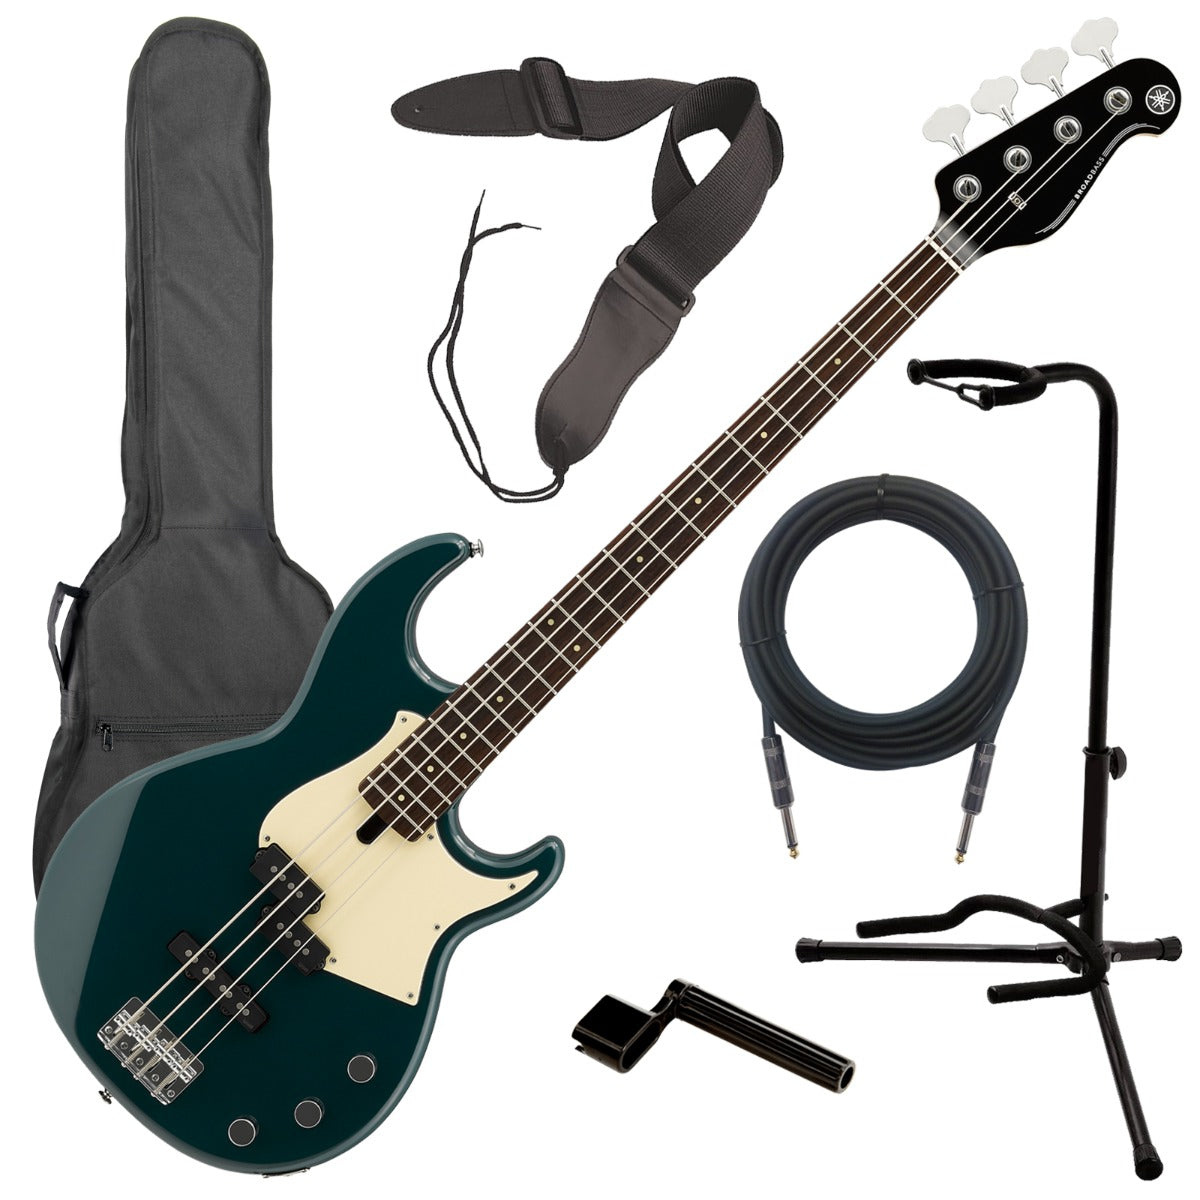 Yamaha BB434 Electric Bass Guitar - Teal Blue COMPLETE BASS BUNDLE